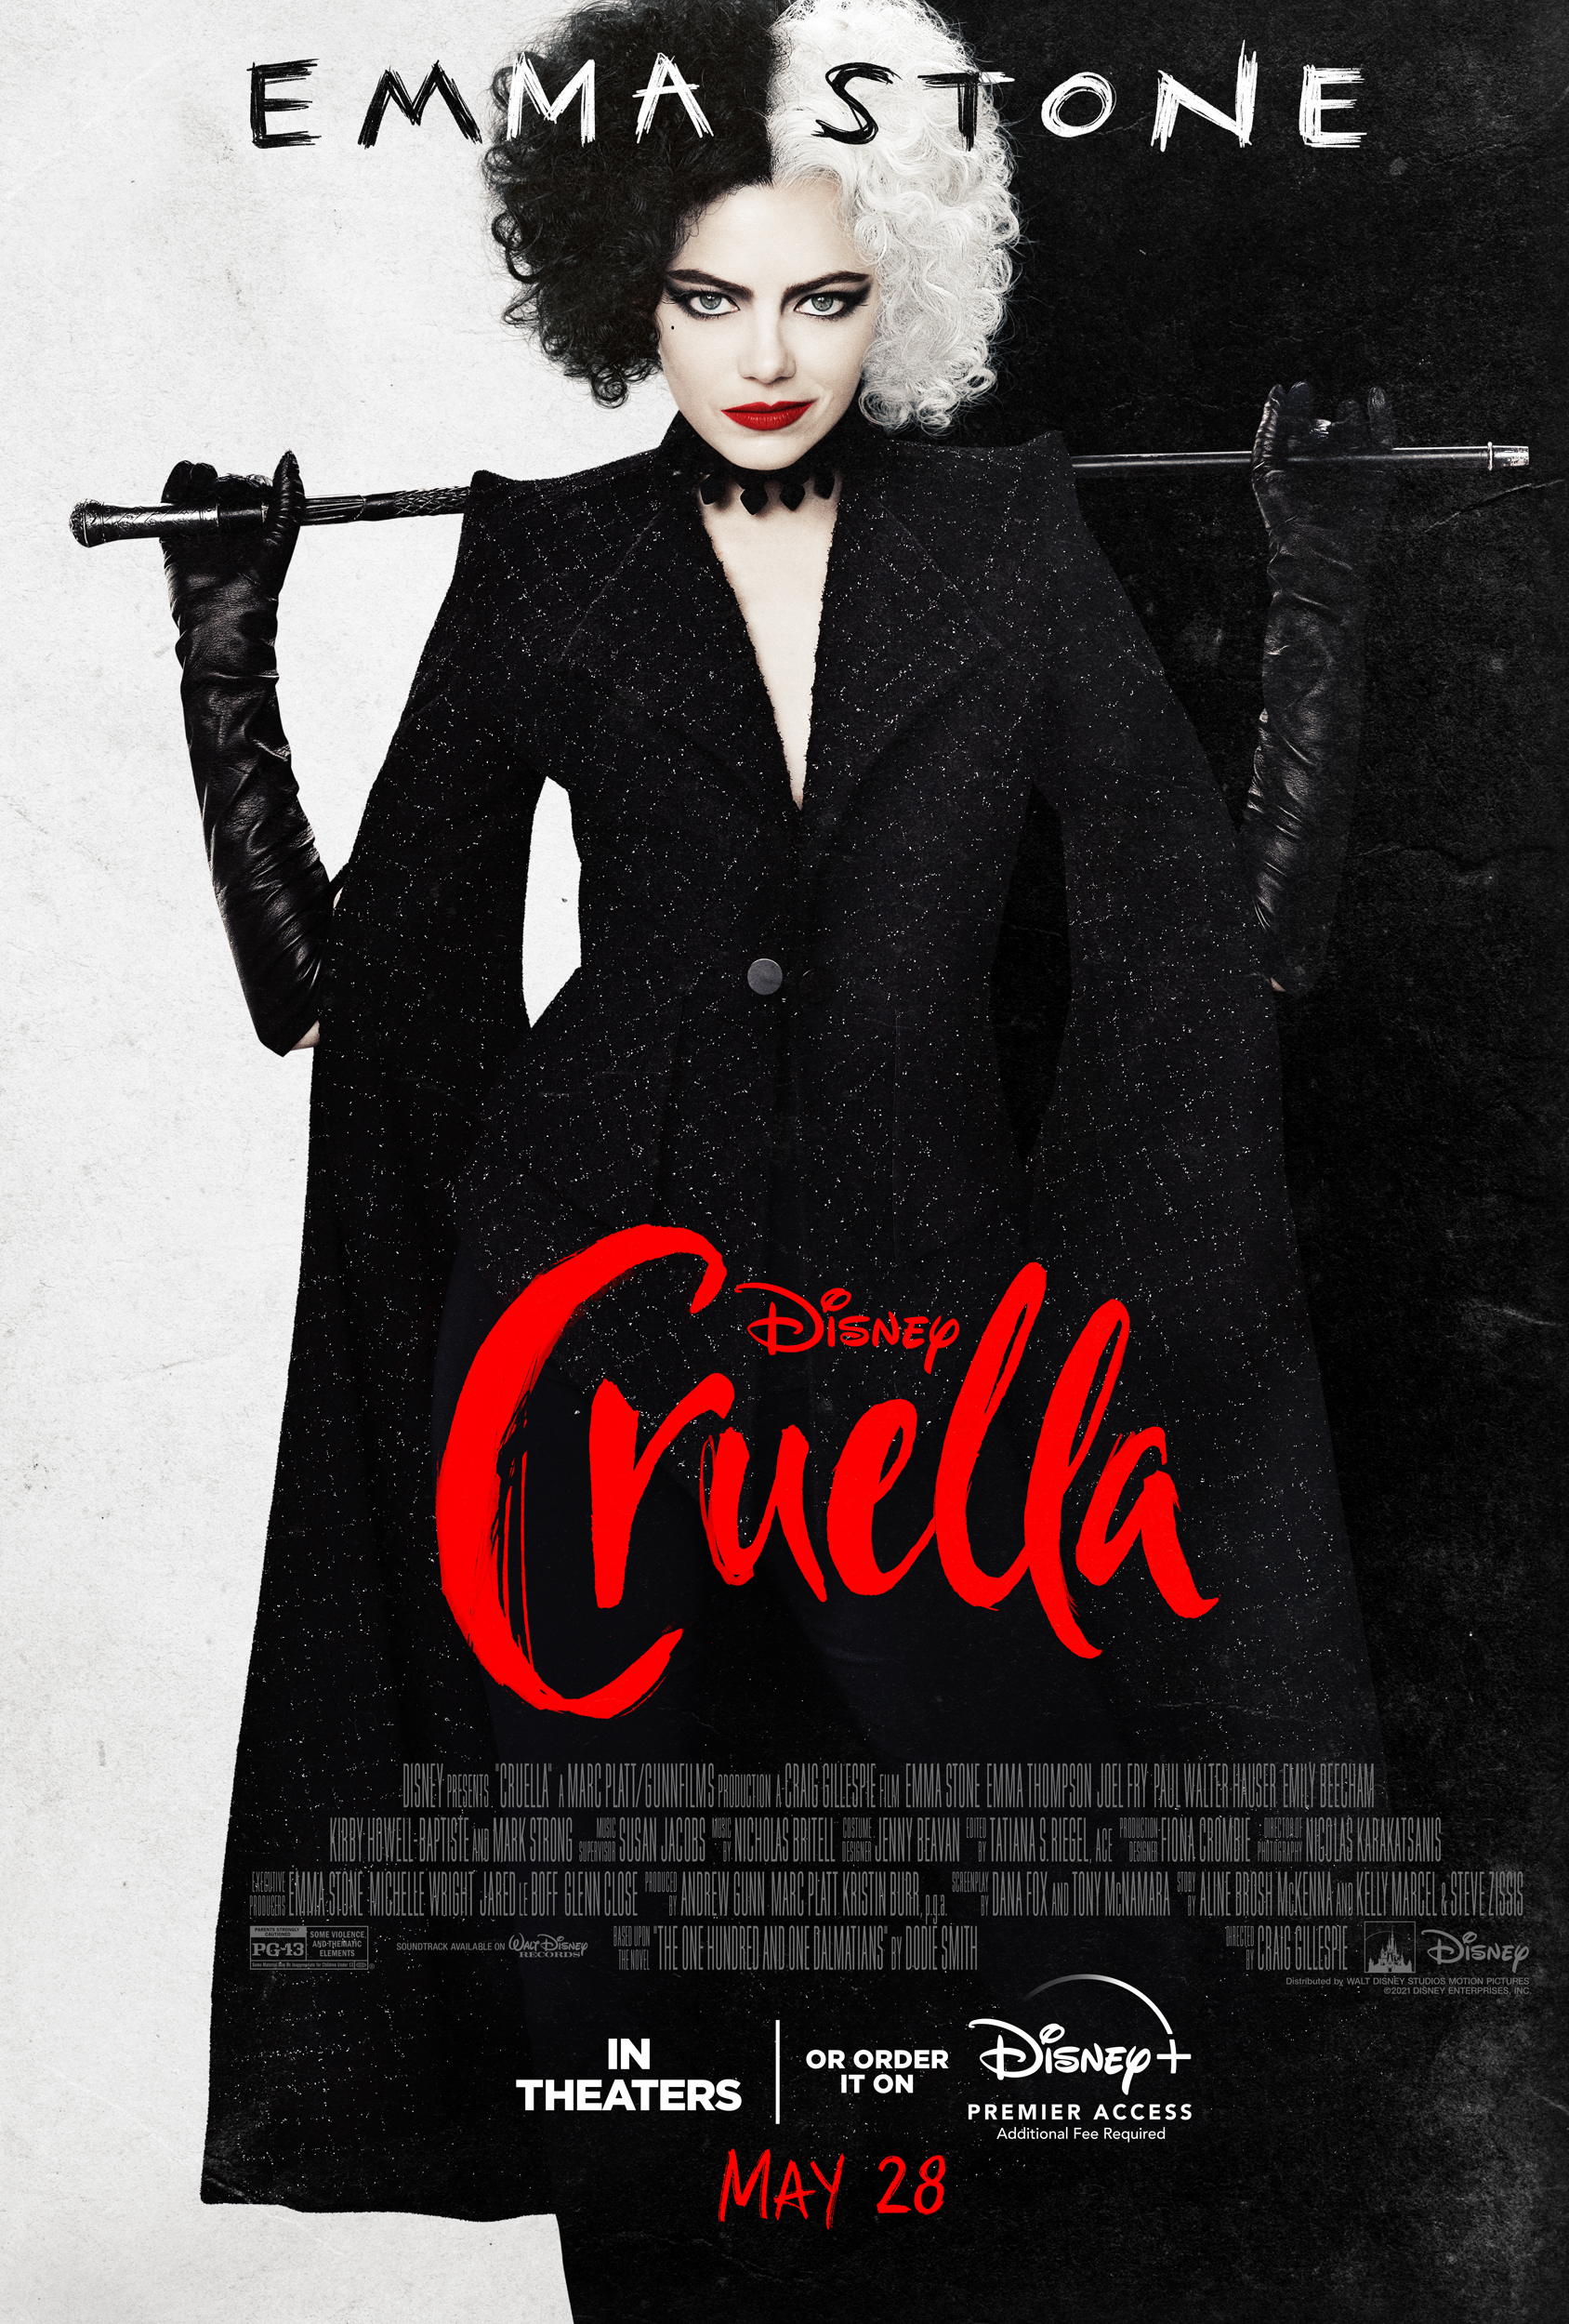 Photo of Cruella